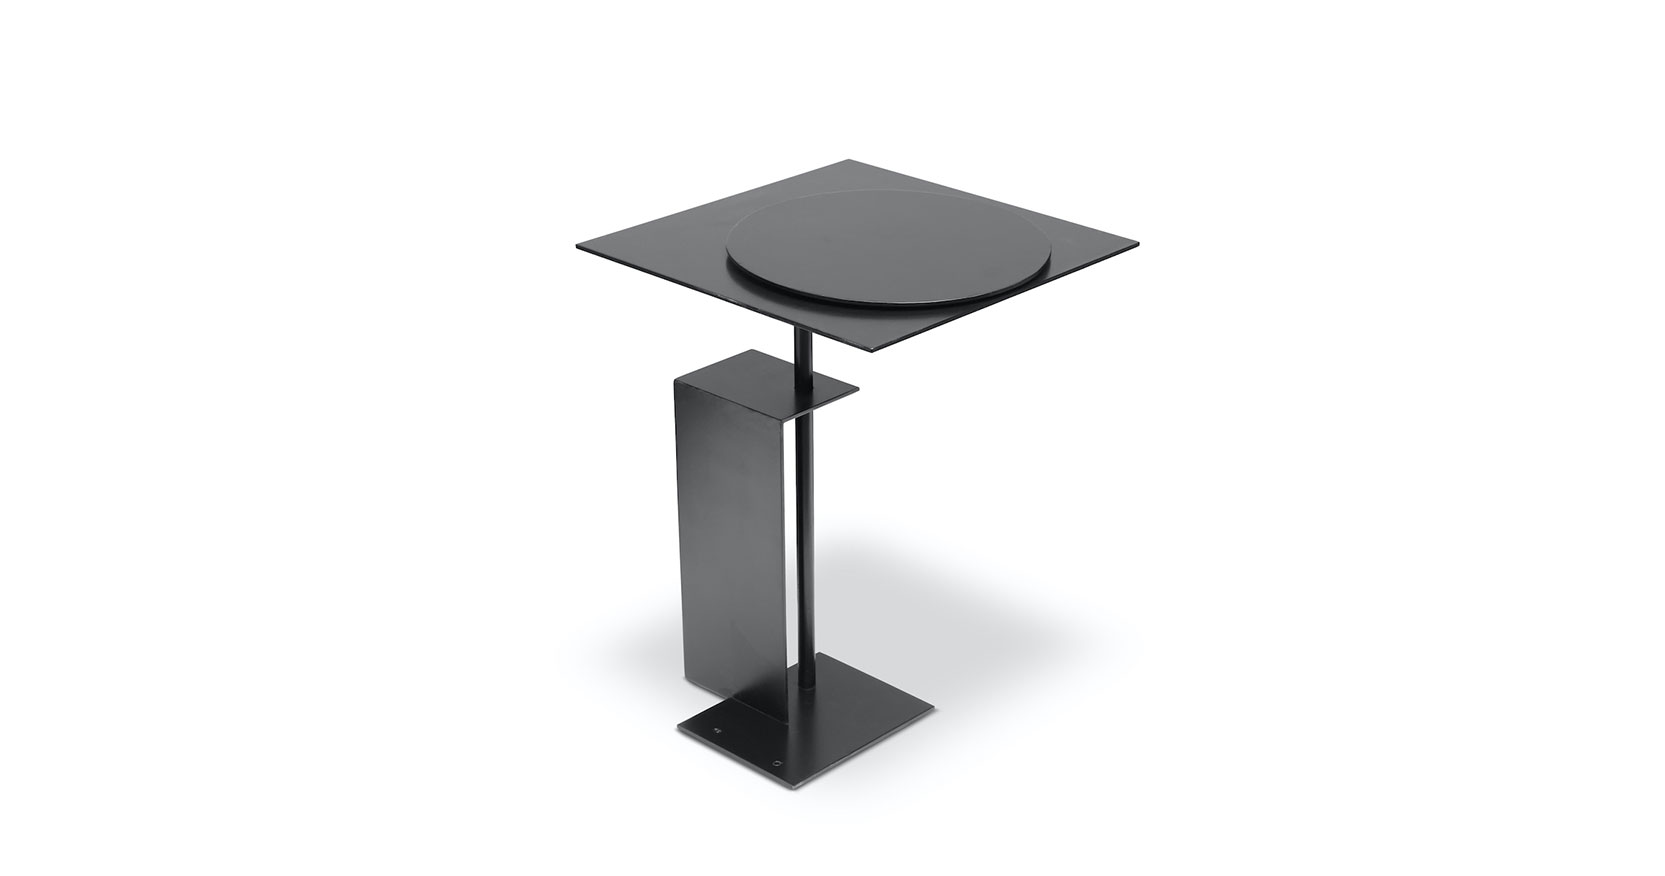 Eric Schmitt, petite table architecturale géométrique en métal noir plié, plateau avec un rond sur le carré, pied rectangulaire